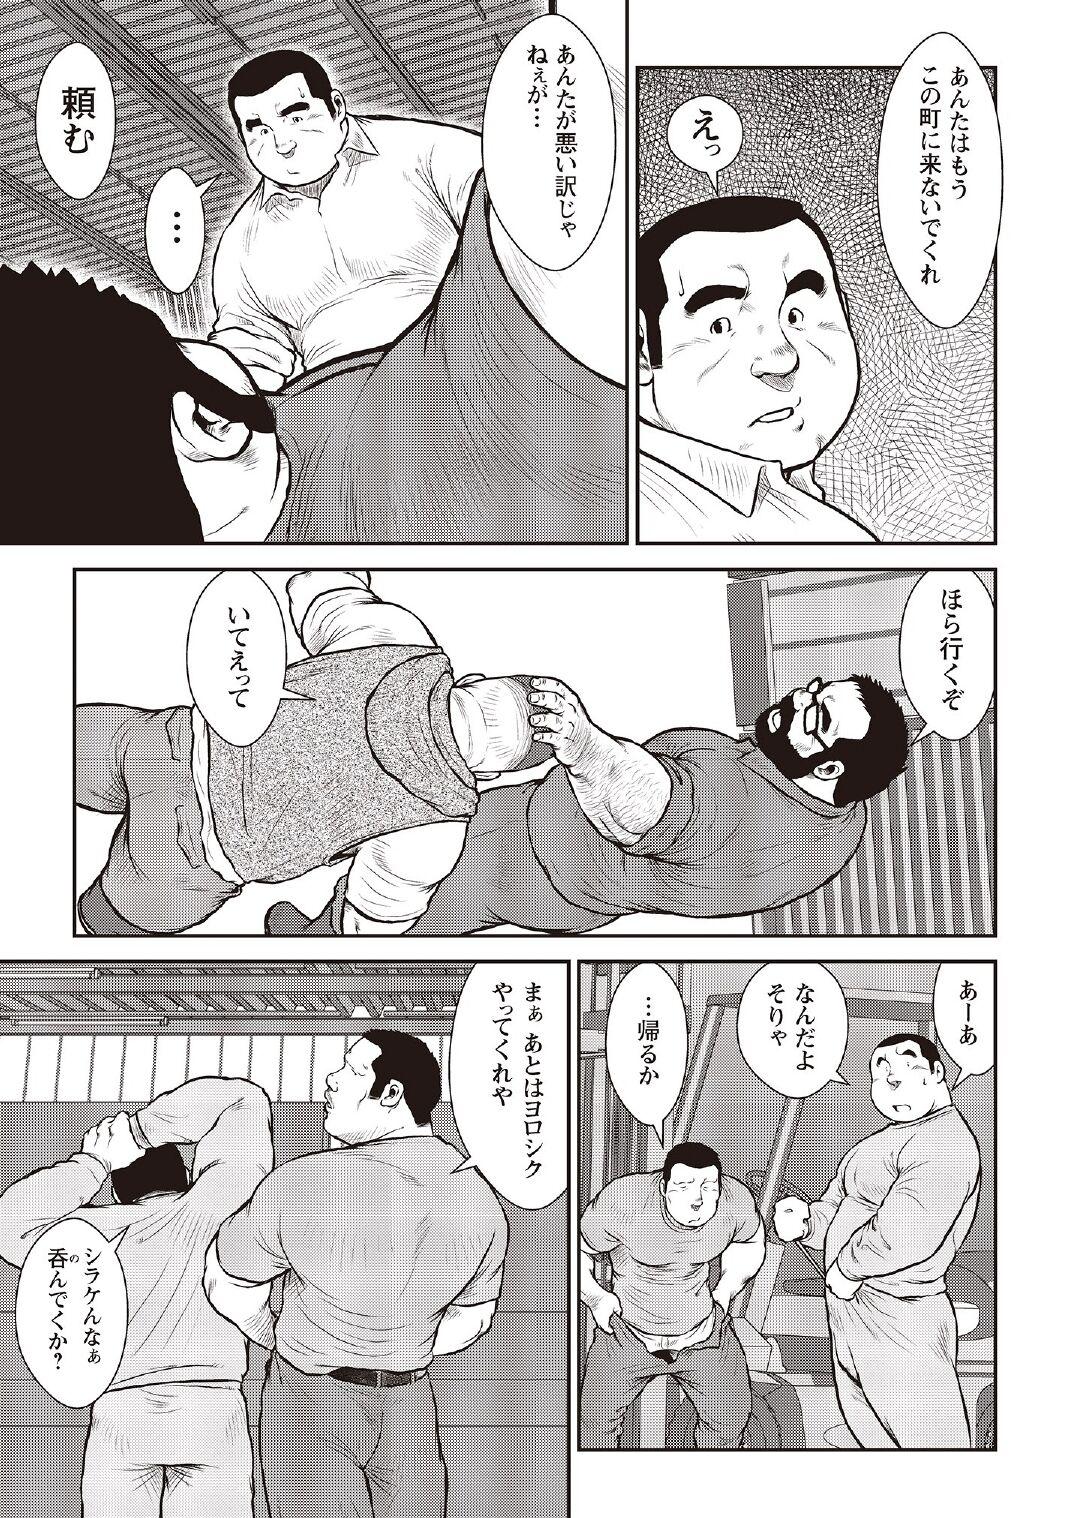 [Ebisubashi Seizou] Ebisubashi Seizou Tanpen Manga Shuu 2 Fuuun! Danshi Ryou [Bunsatsuban] PART 3 Bousou Hantou Taifuu Zensen Ch. 3 ~ Ch. 5 [Digital] 56